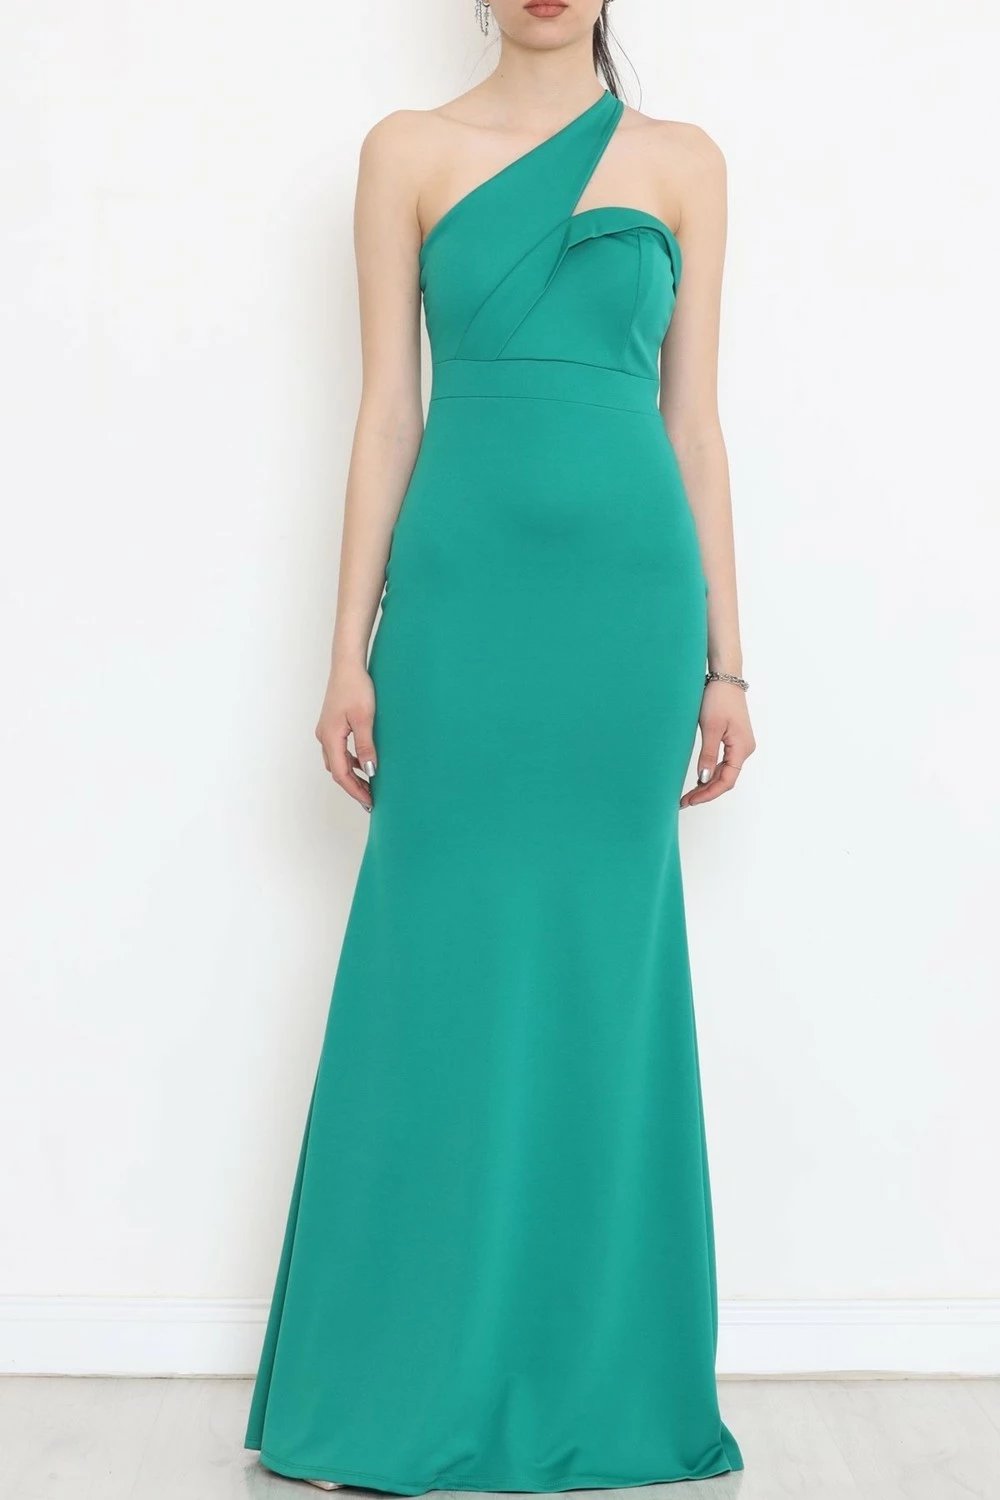 Fustan Hd Giyim, për femra, ngjyrë smeraldi